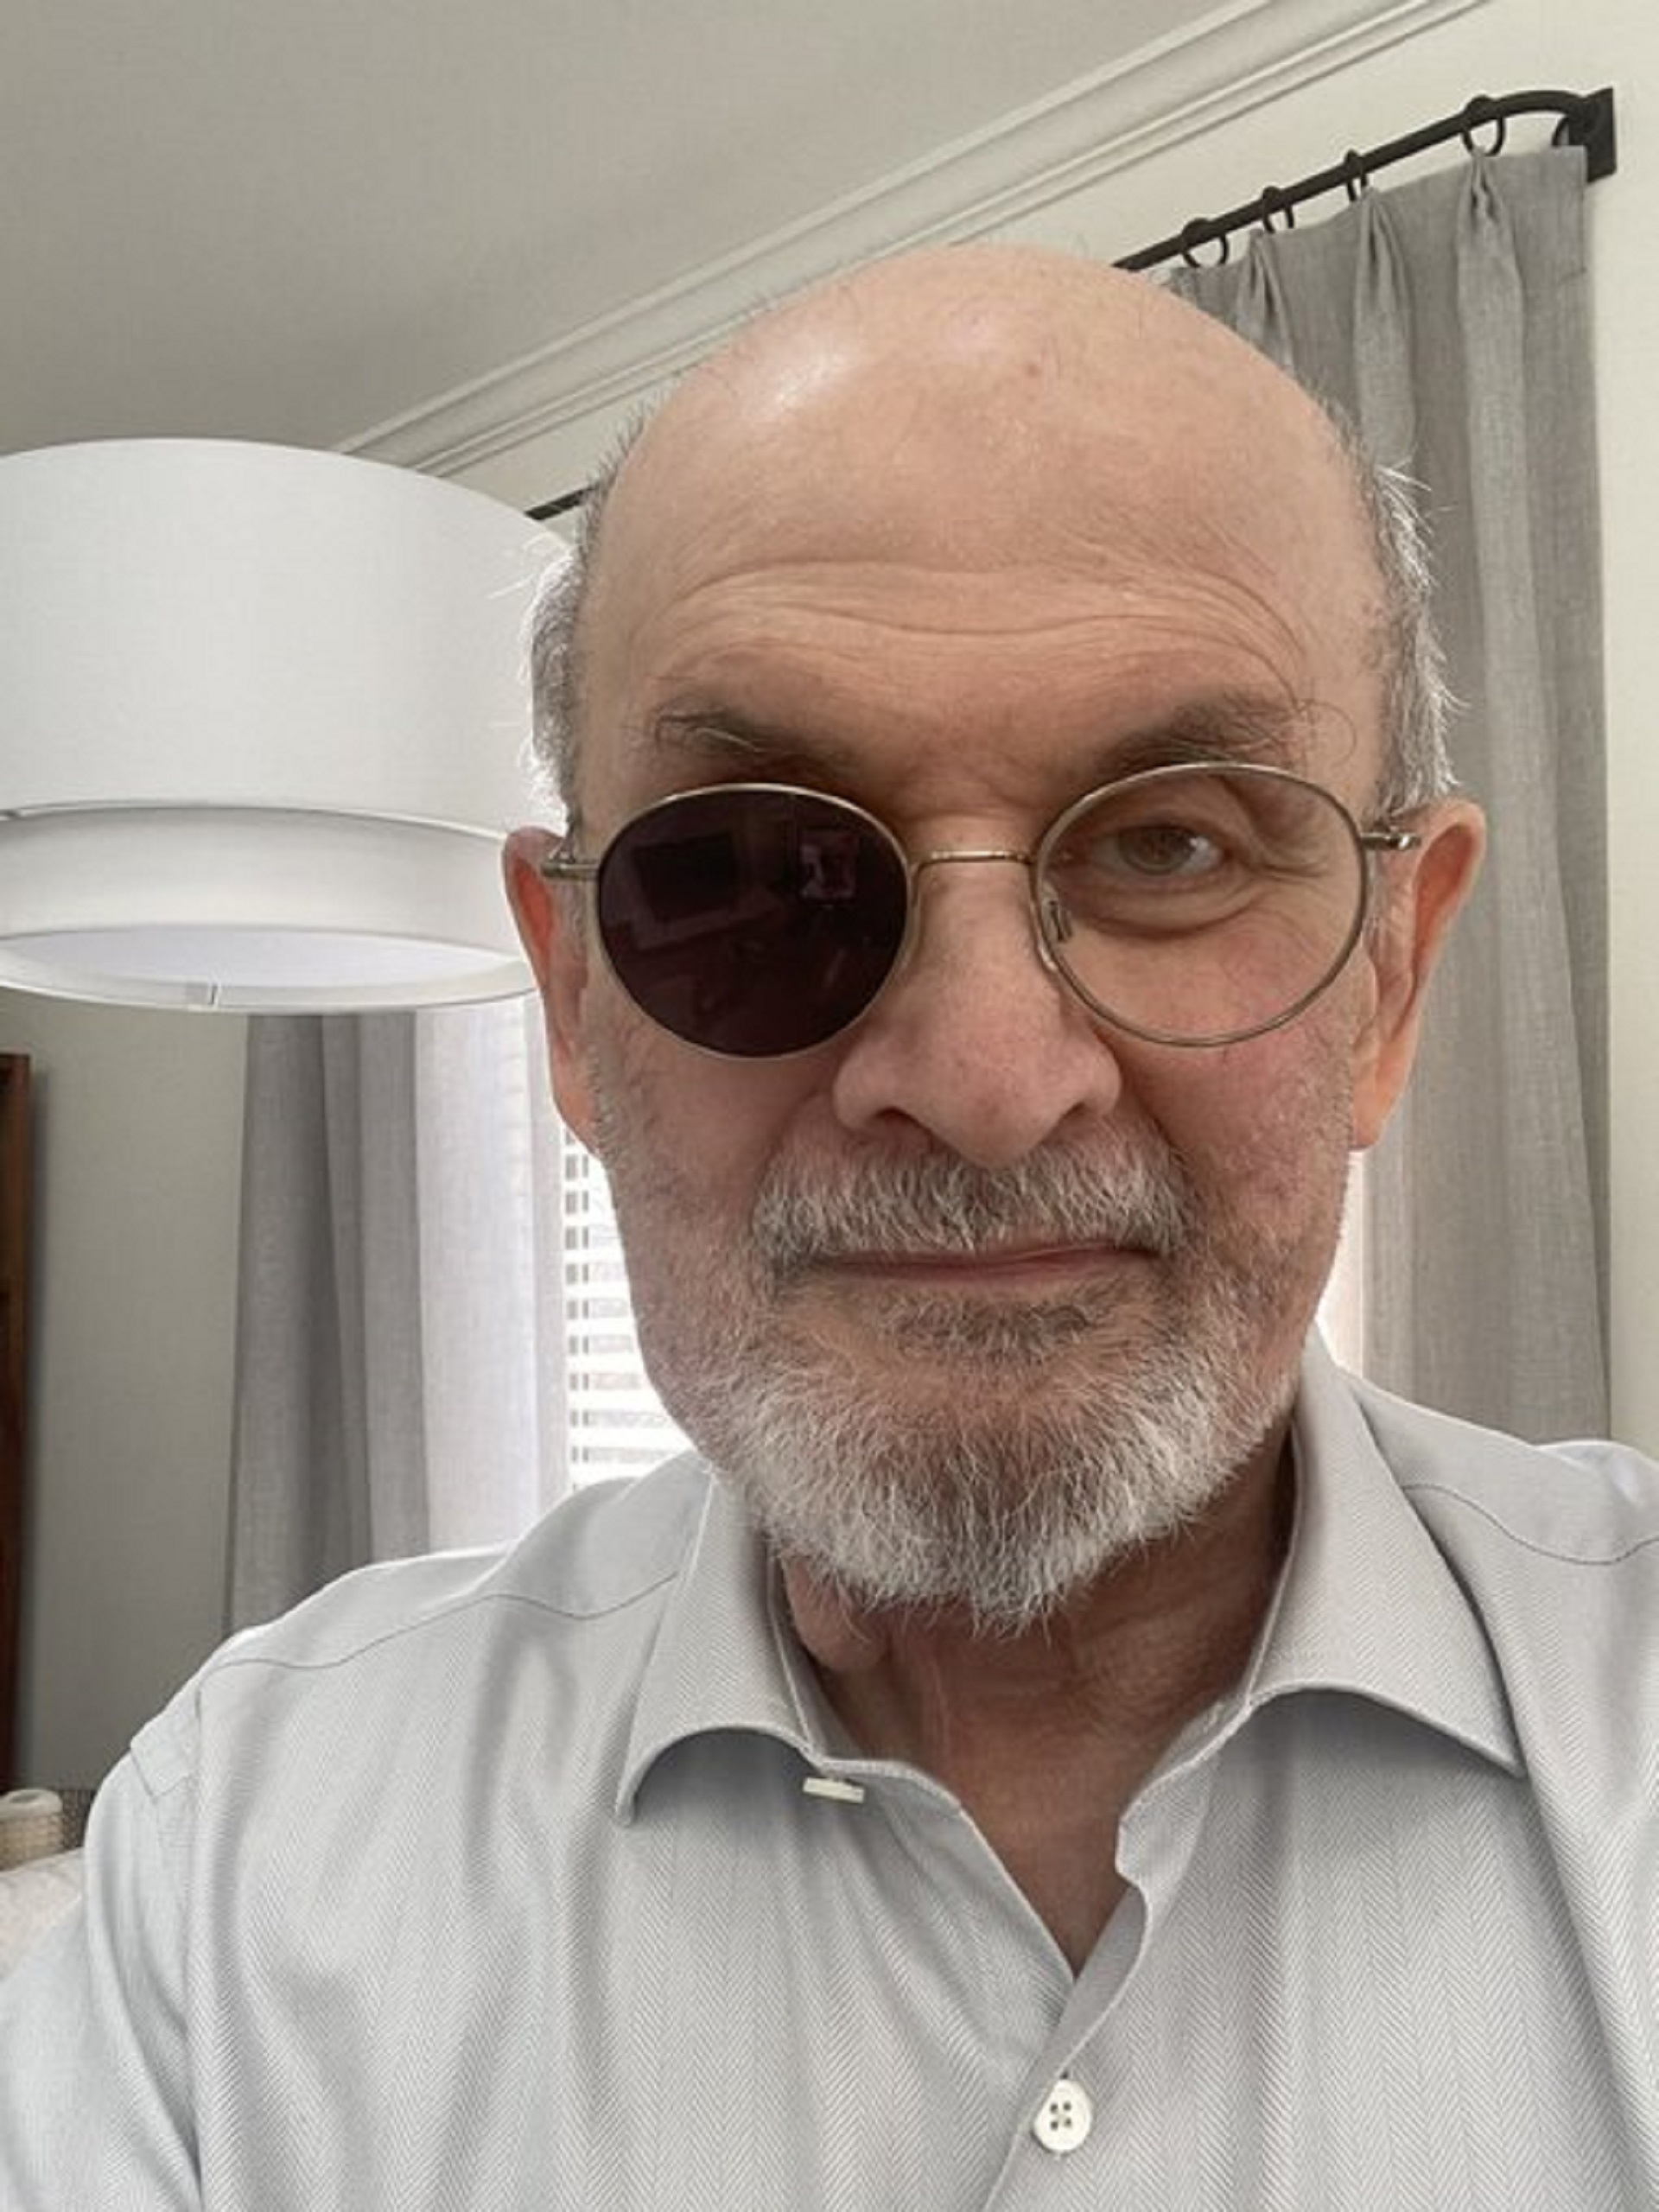 Con una selfie, Salman Rushdie mostró su “aspecto real” luego del ataque (Foto: Twitter)